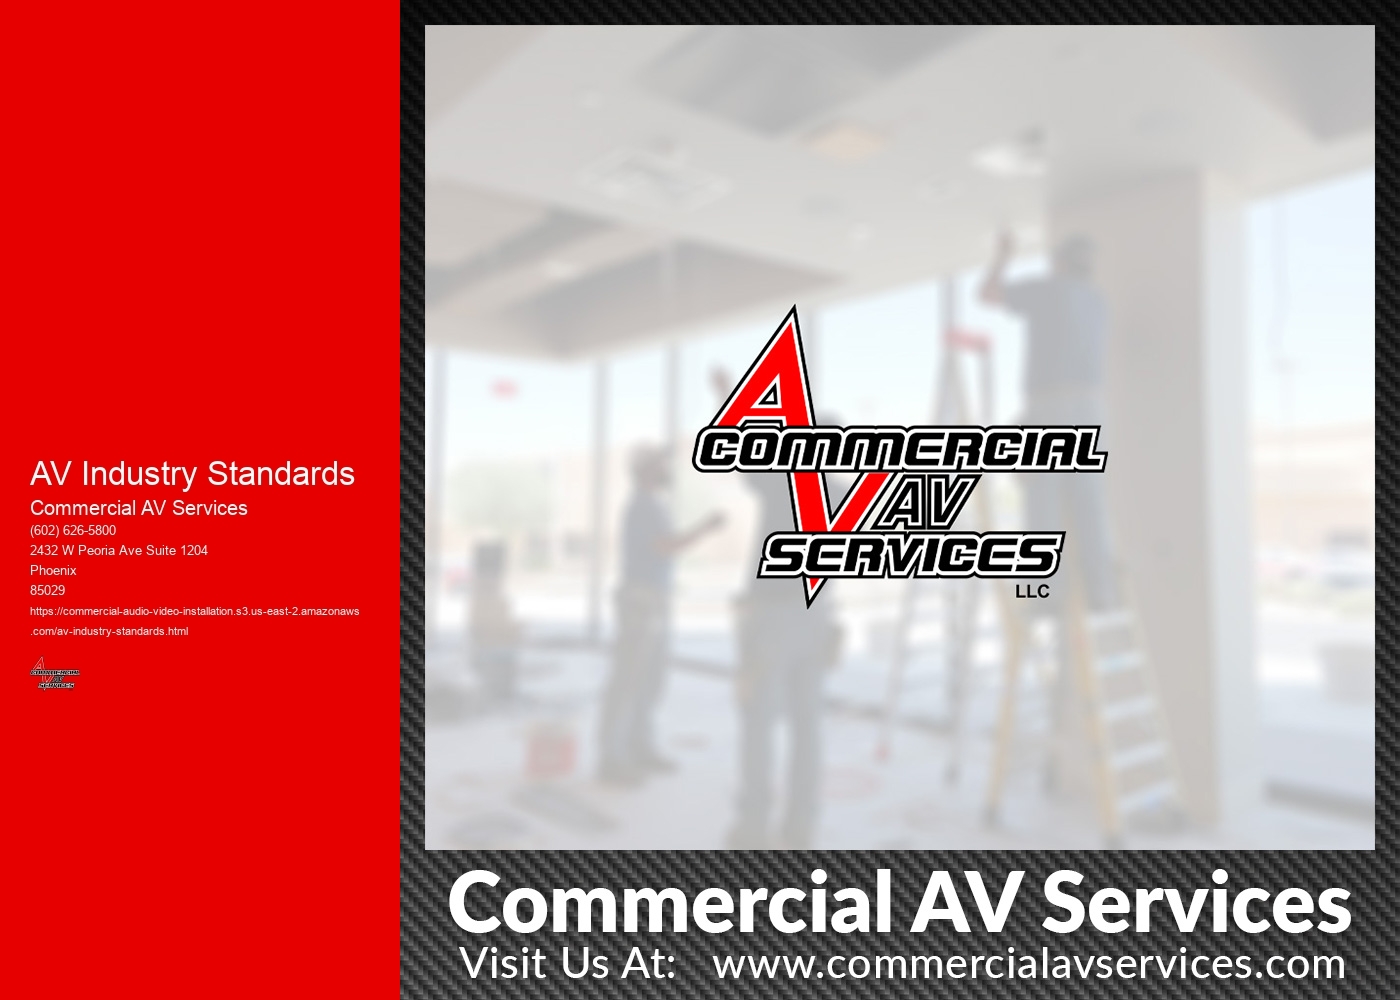 How do AV industry standards address the issue of power consumption and energy efficiency in AV equipment?